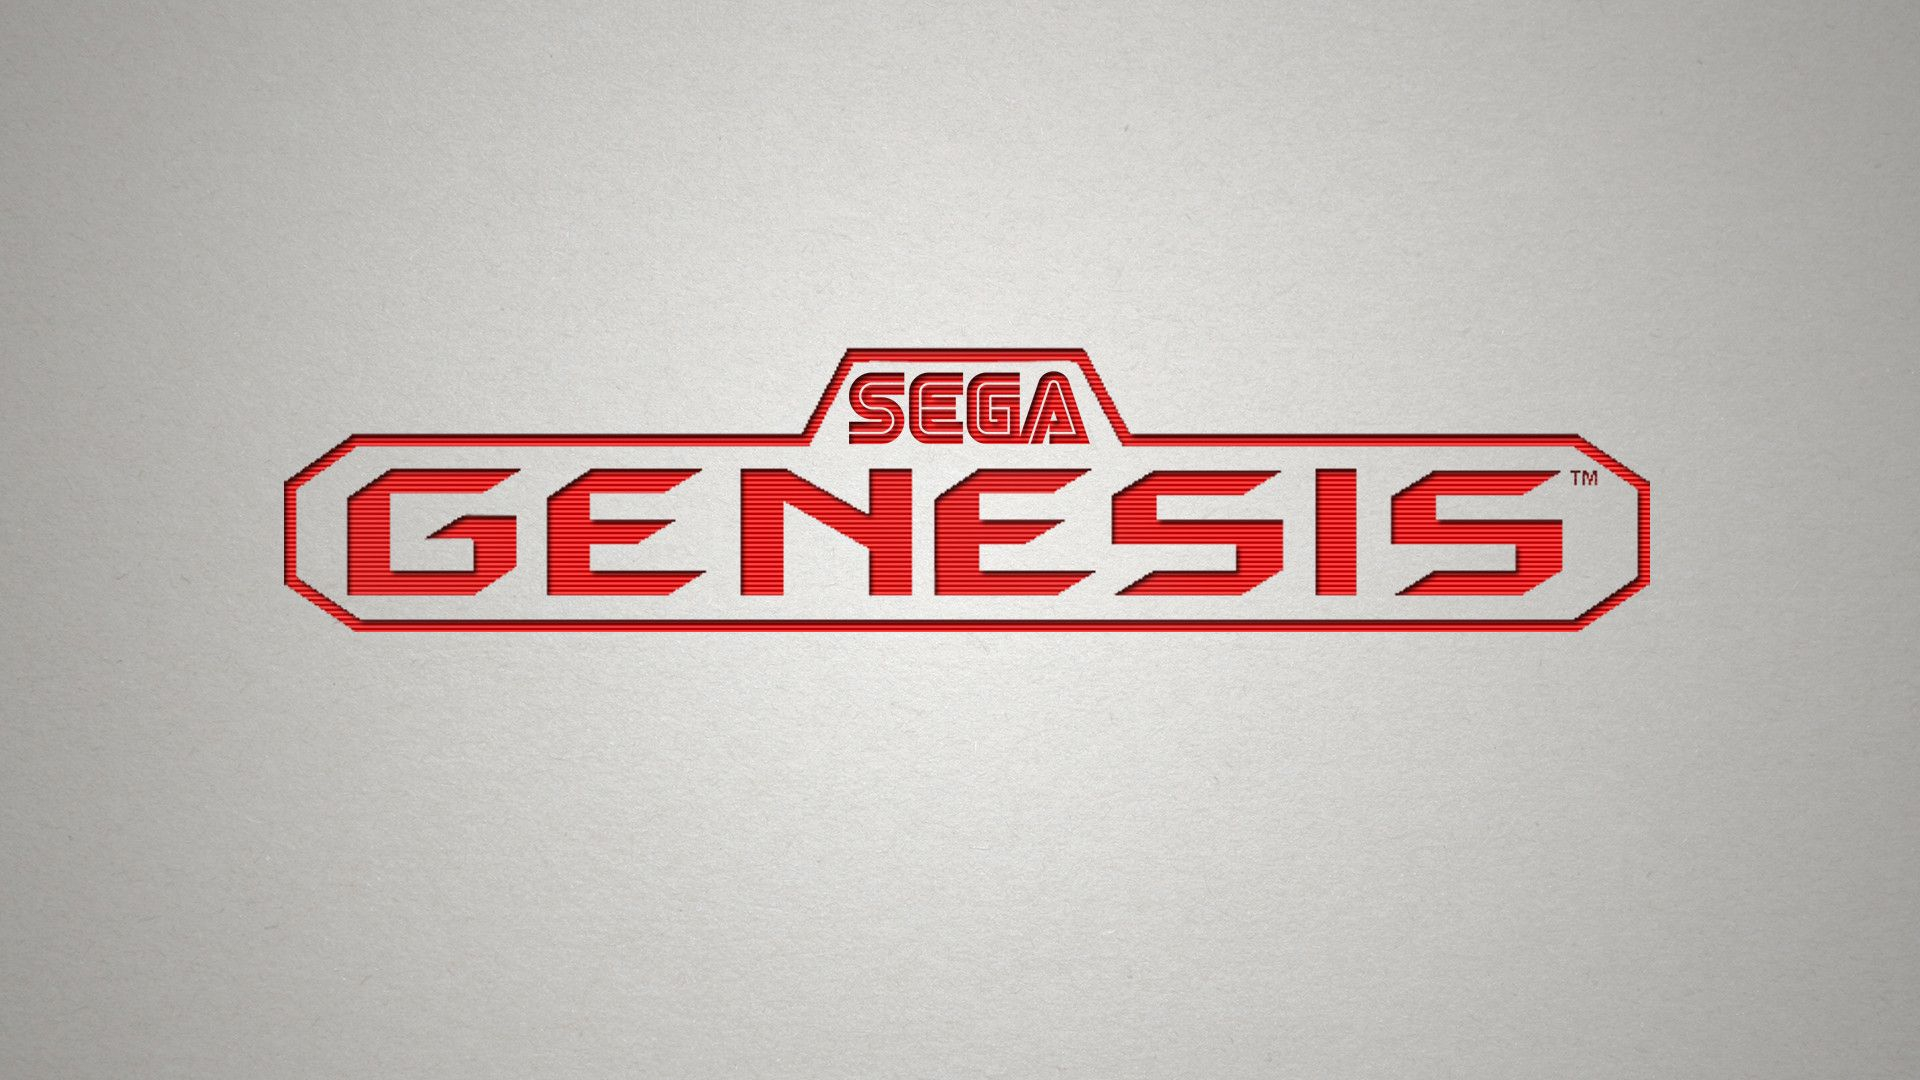 1920x1080 Sega Genesis Wallpapers Top Free Sega Genesis Backgrounds